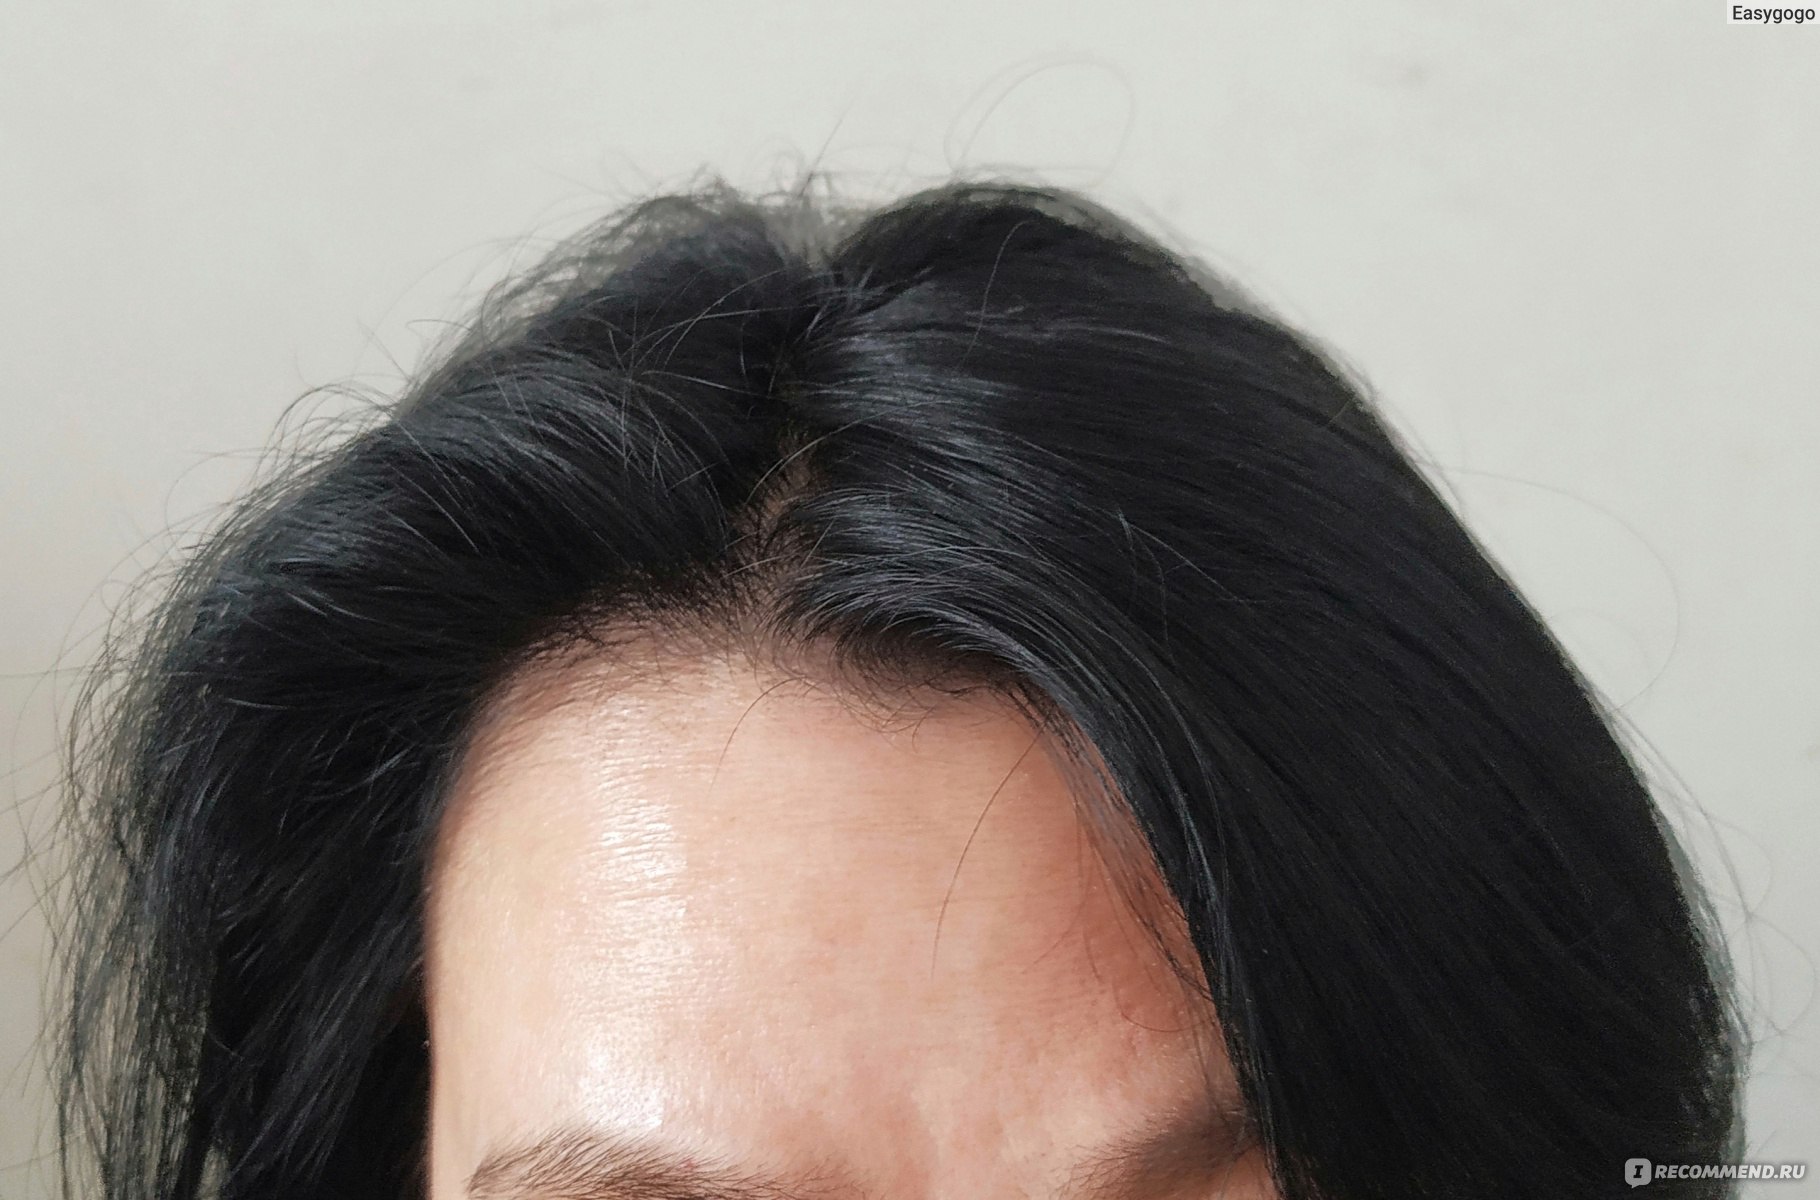  Бигуди для волос LOVELY Hairstyle, 2 шт